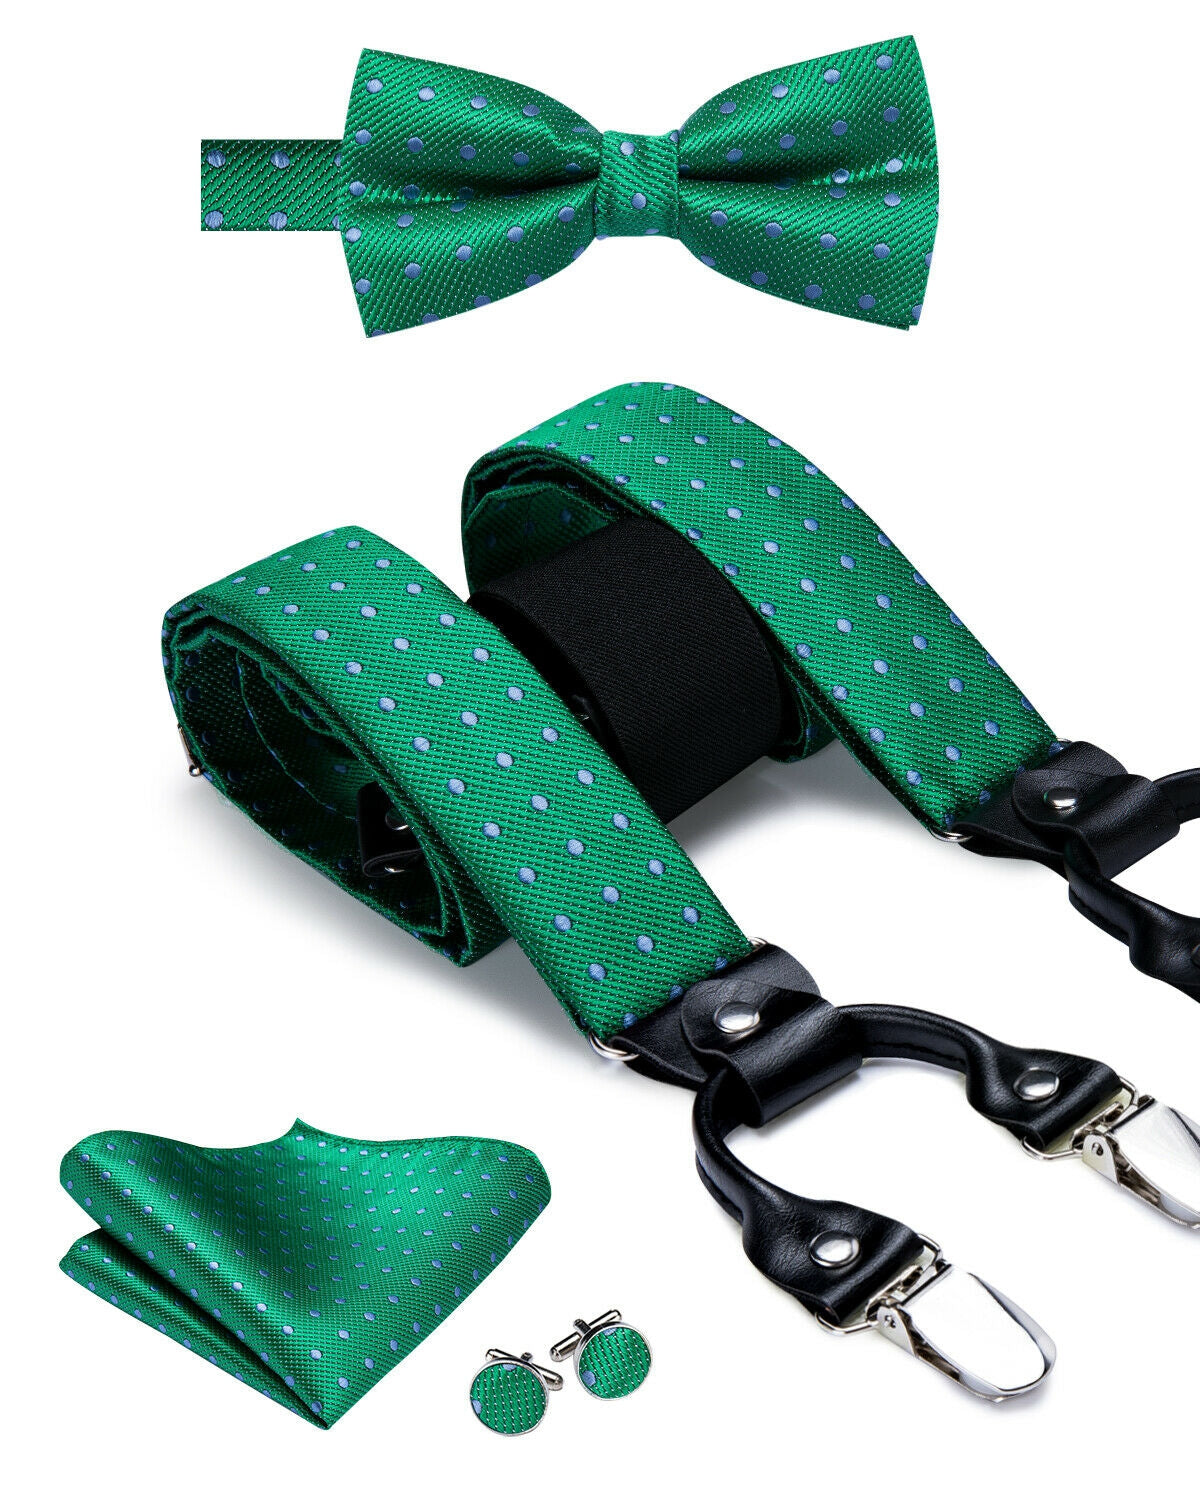 BD3009 Men's Braces Designer Clip Suspender Set [Green Dots]